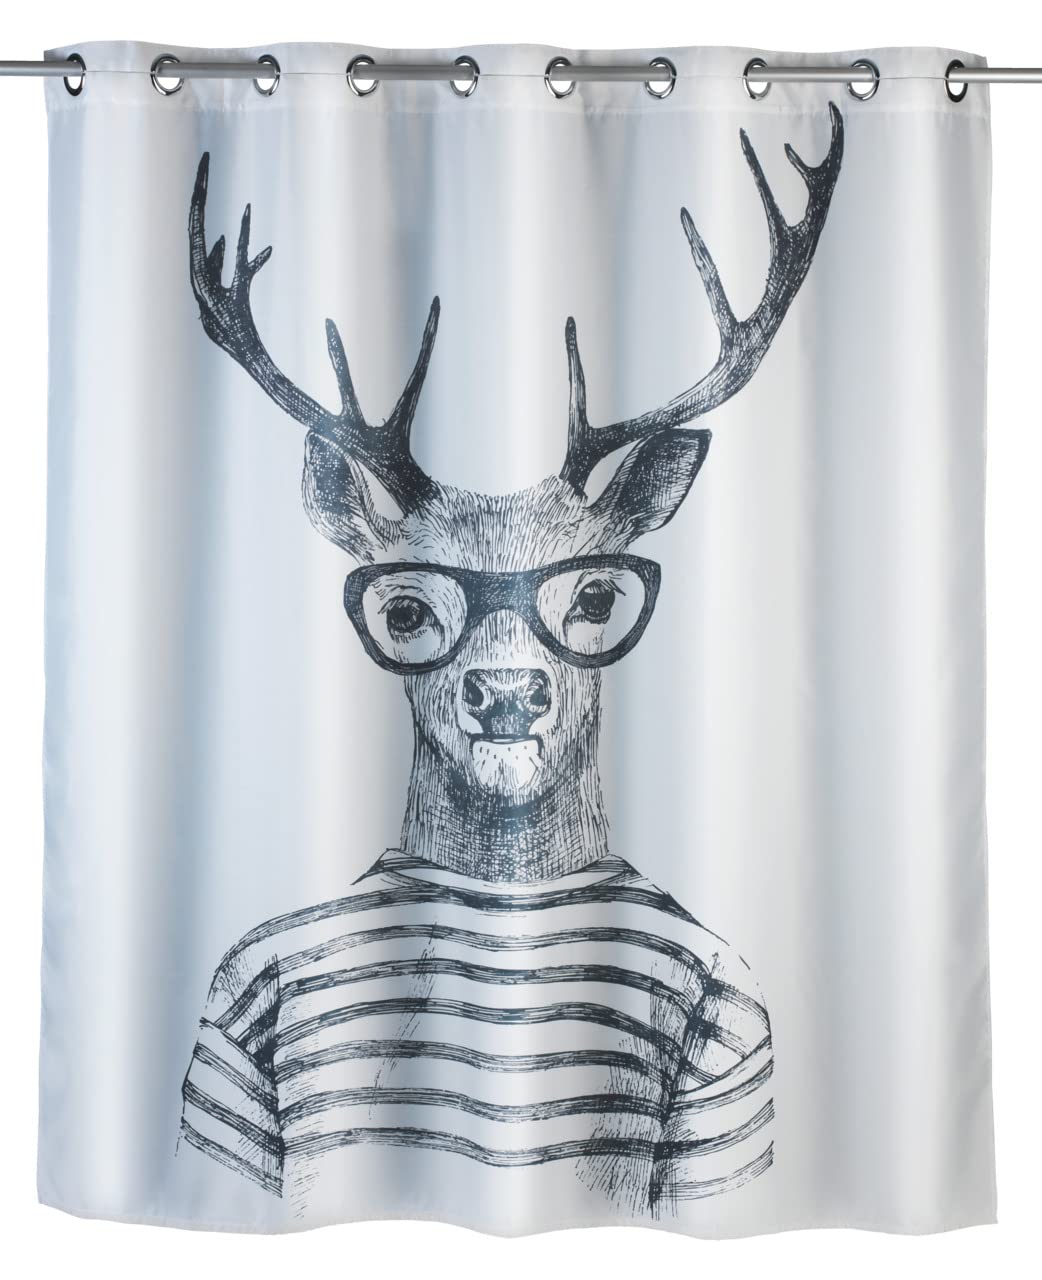 WENKO Anti-Schimmel Duschvorhang Mr.Deer Flex, Textil-Vorhang mit Antischimmel Effekt, große integrierte Ringe zur Befestigung an der Duschstange, waschbar,wasserabweisend, 180 x 200 cm